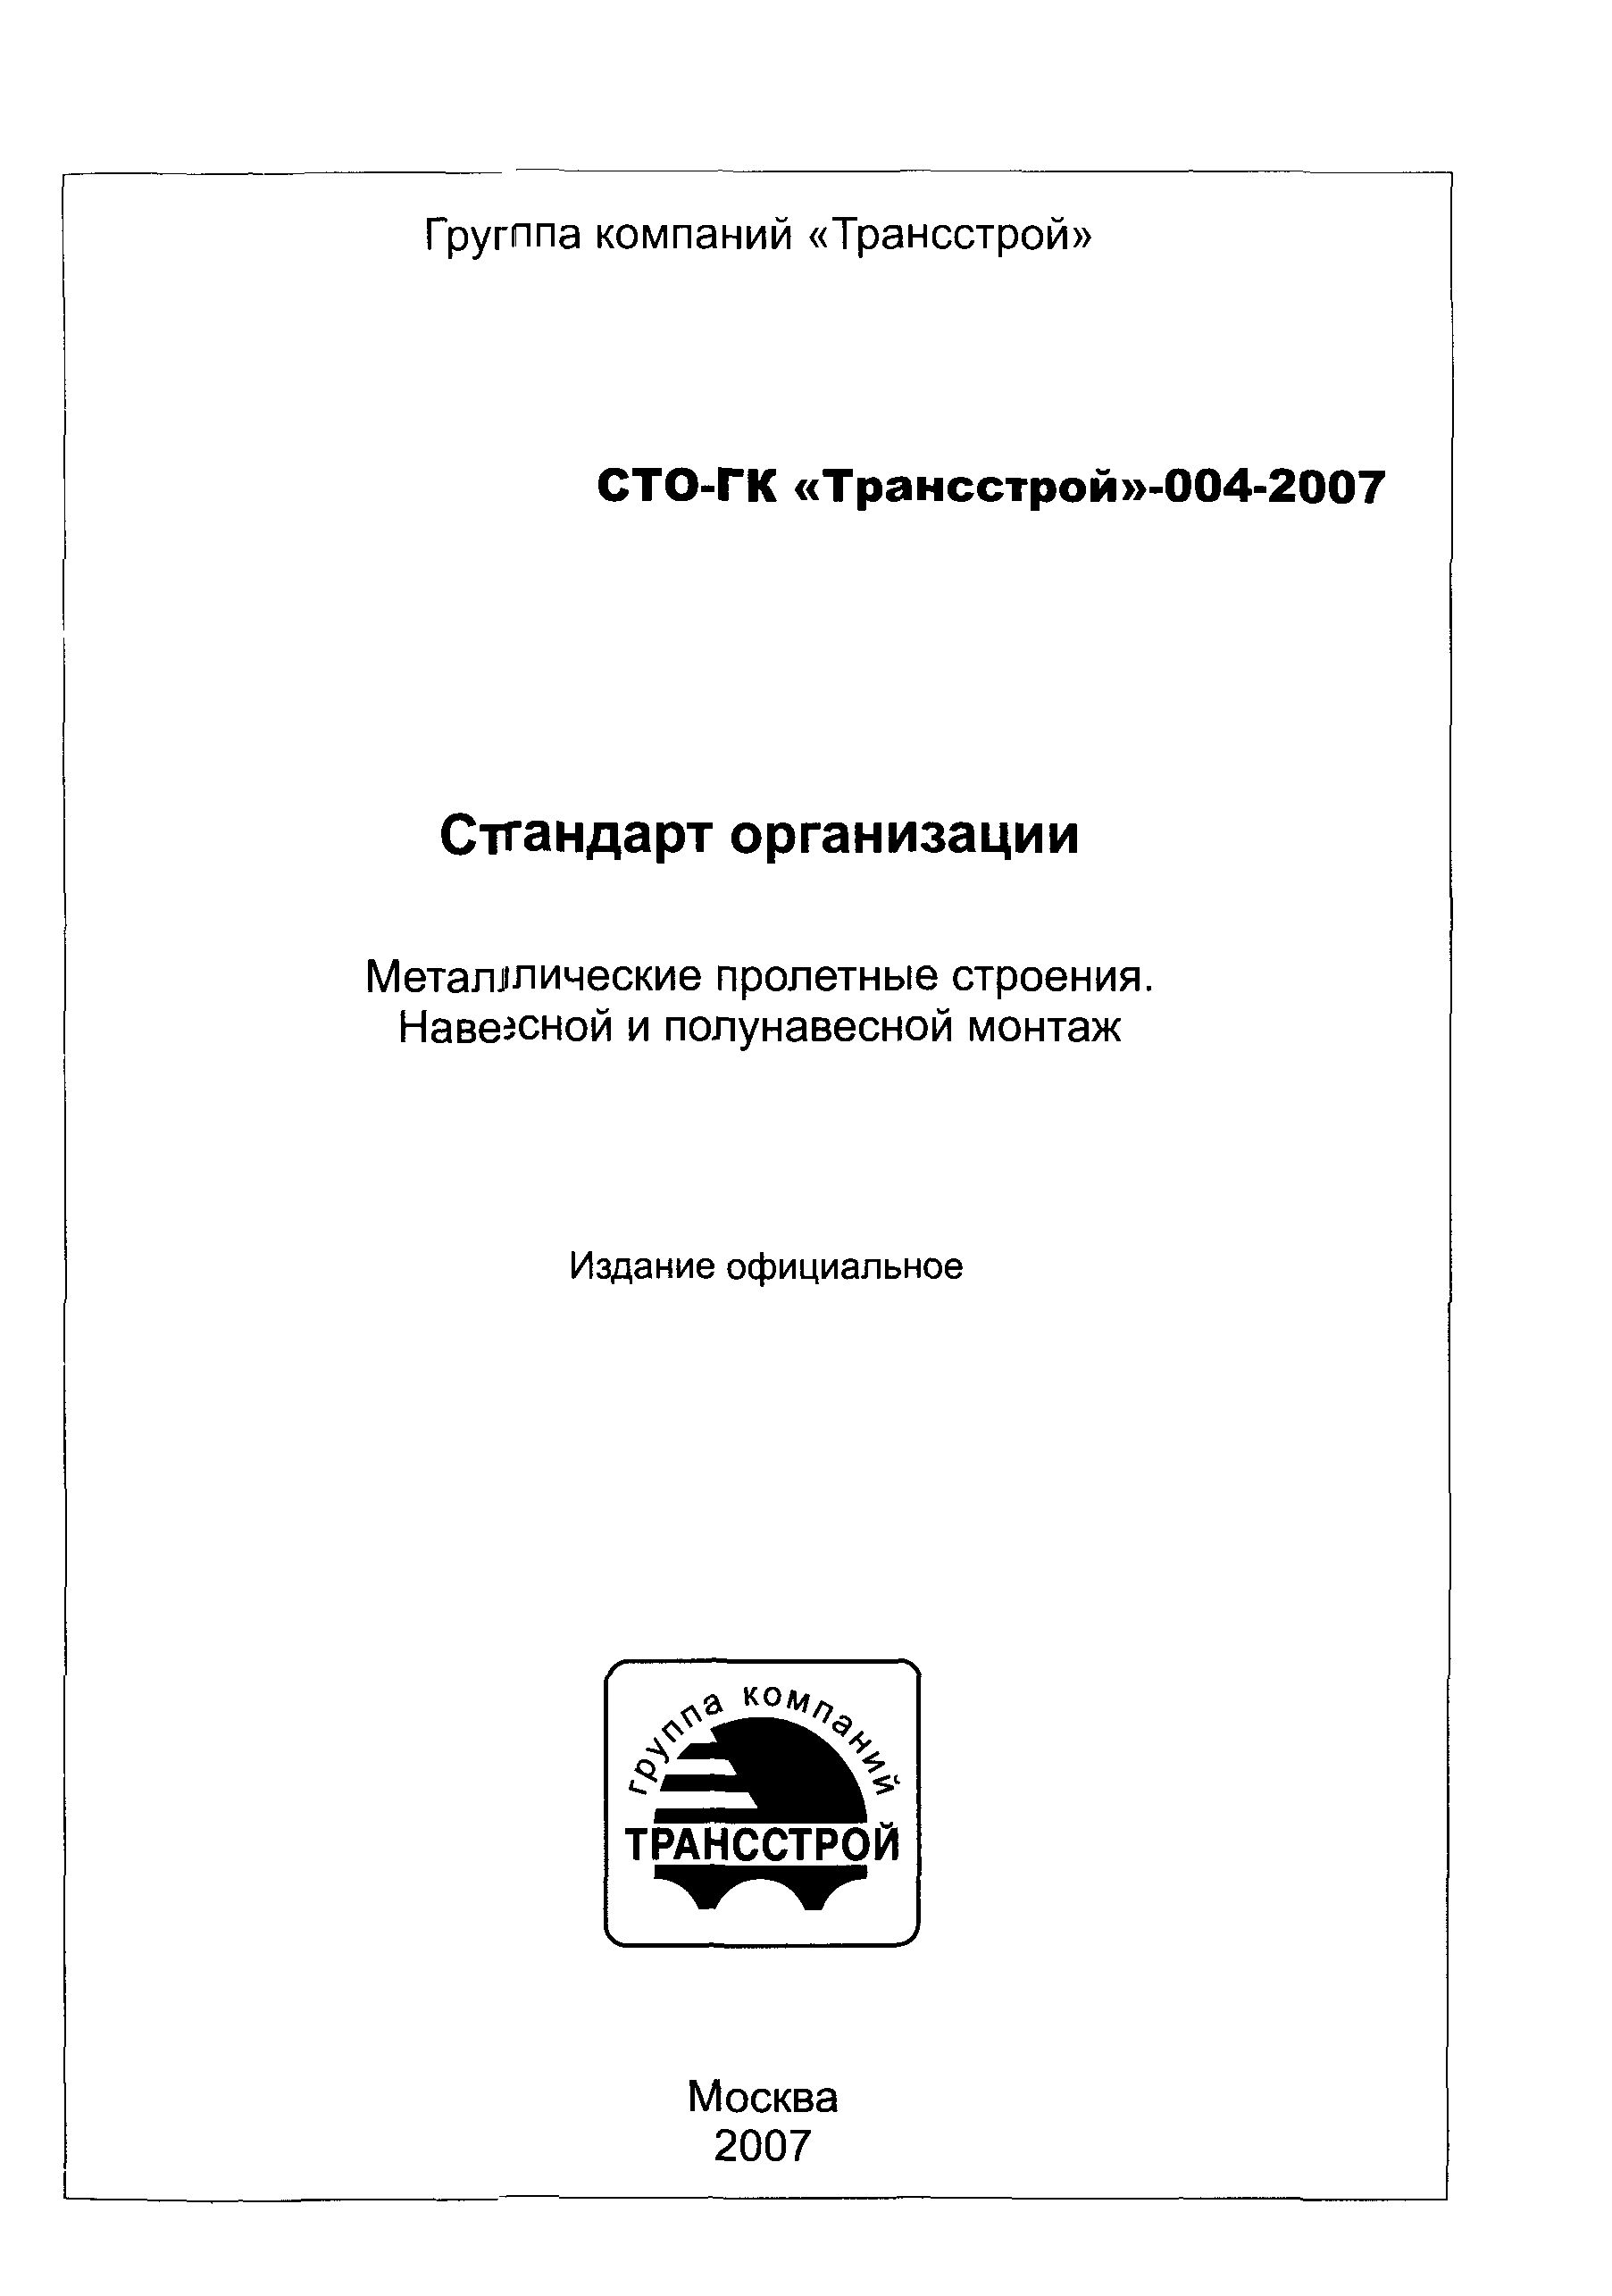 СТО-ГК "Трансстрой" 004-2007